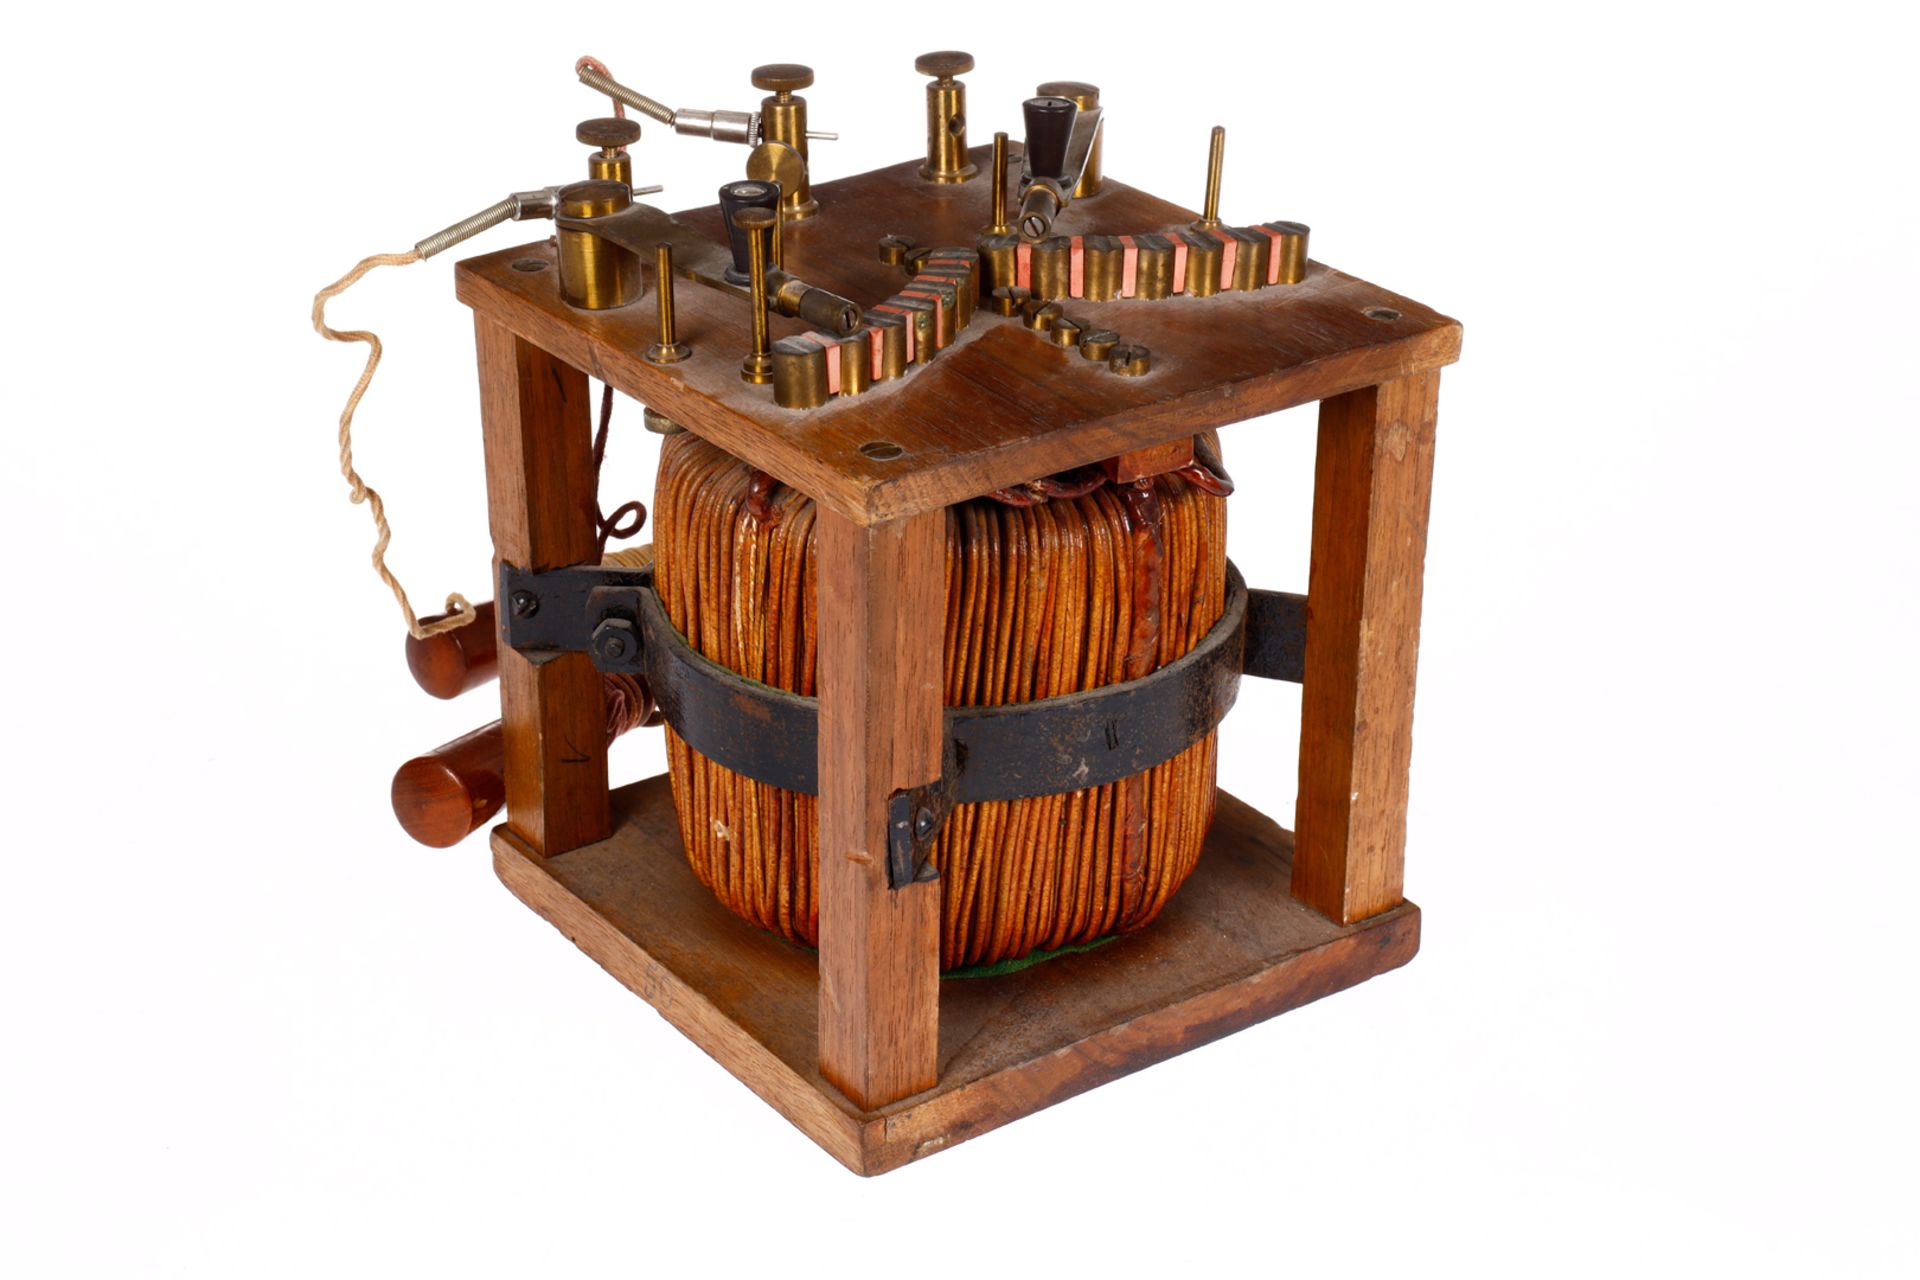 Elektrisierapparat mit großer Spule in Holzgehäuse, mit 2 Handapparaten, uralt, elektrisch, H 20 - Image 4 of 4